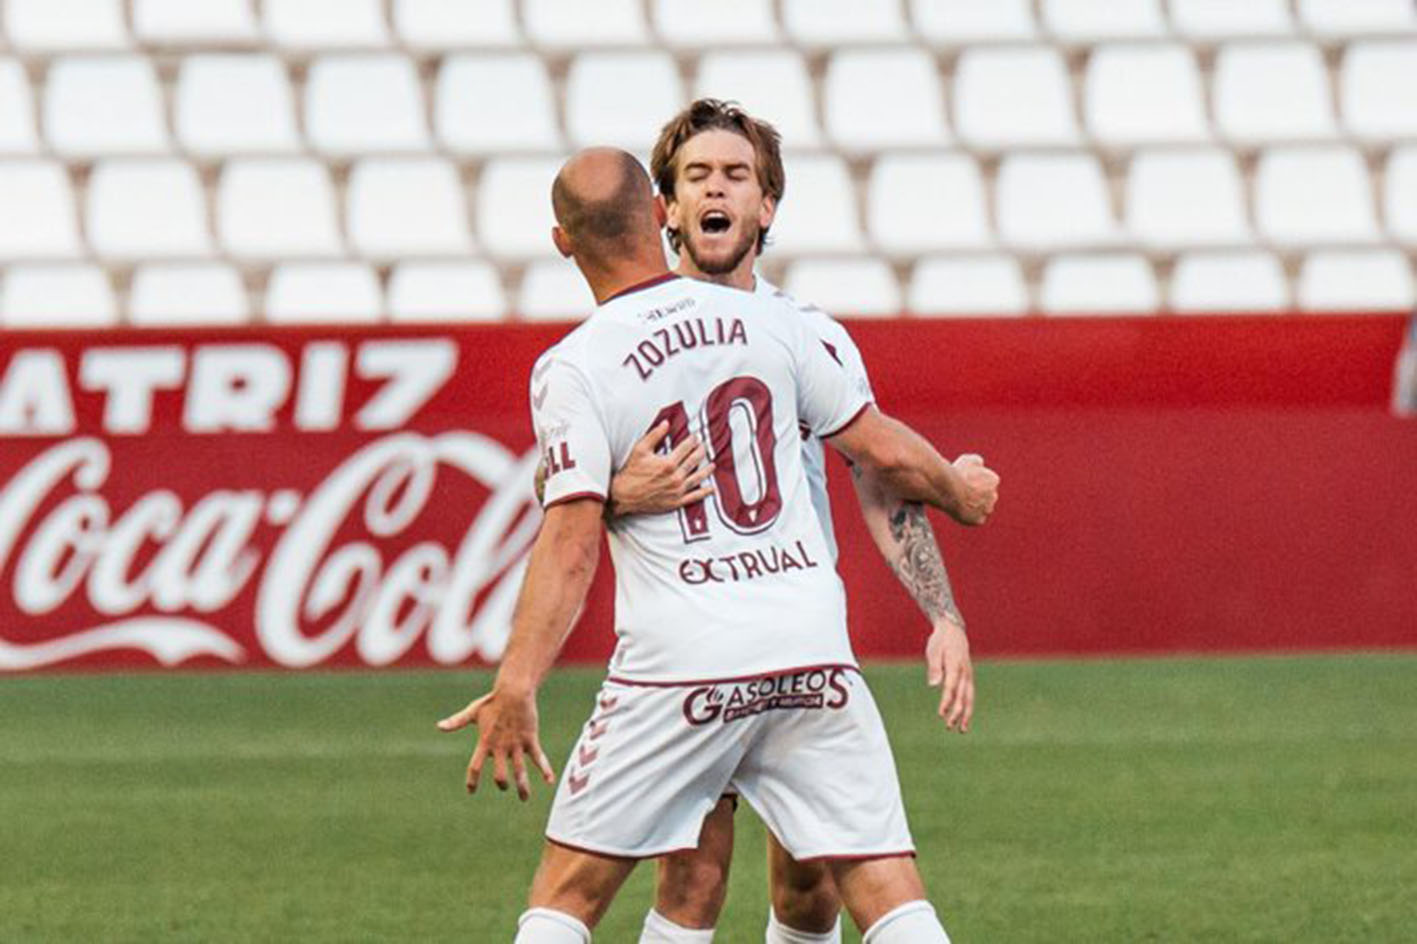 El gol de Zozulia mantiene al Albacete fuera del descenso.